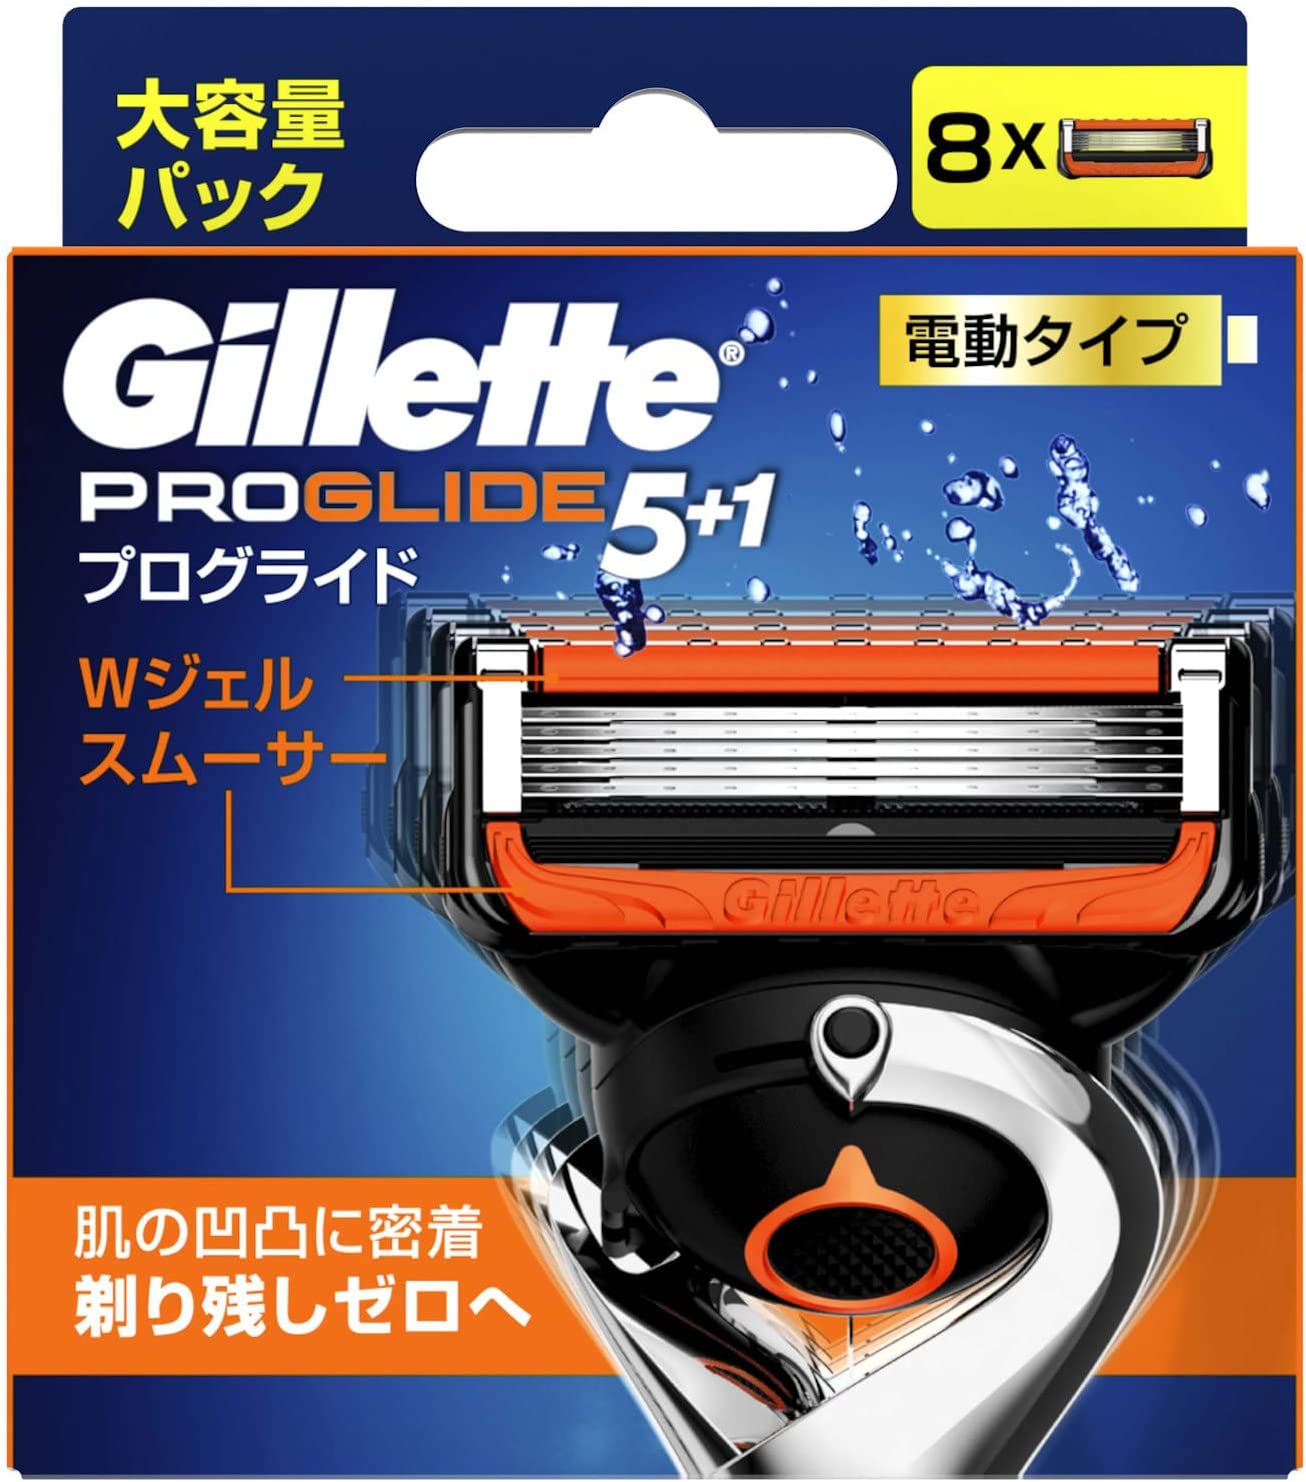 P&G Gillett 吉列 Gillette Proglide電型替換刀片8件